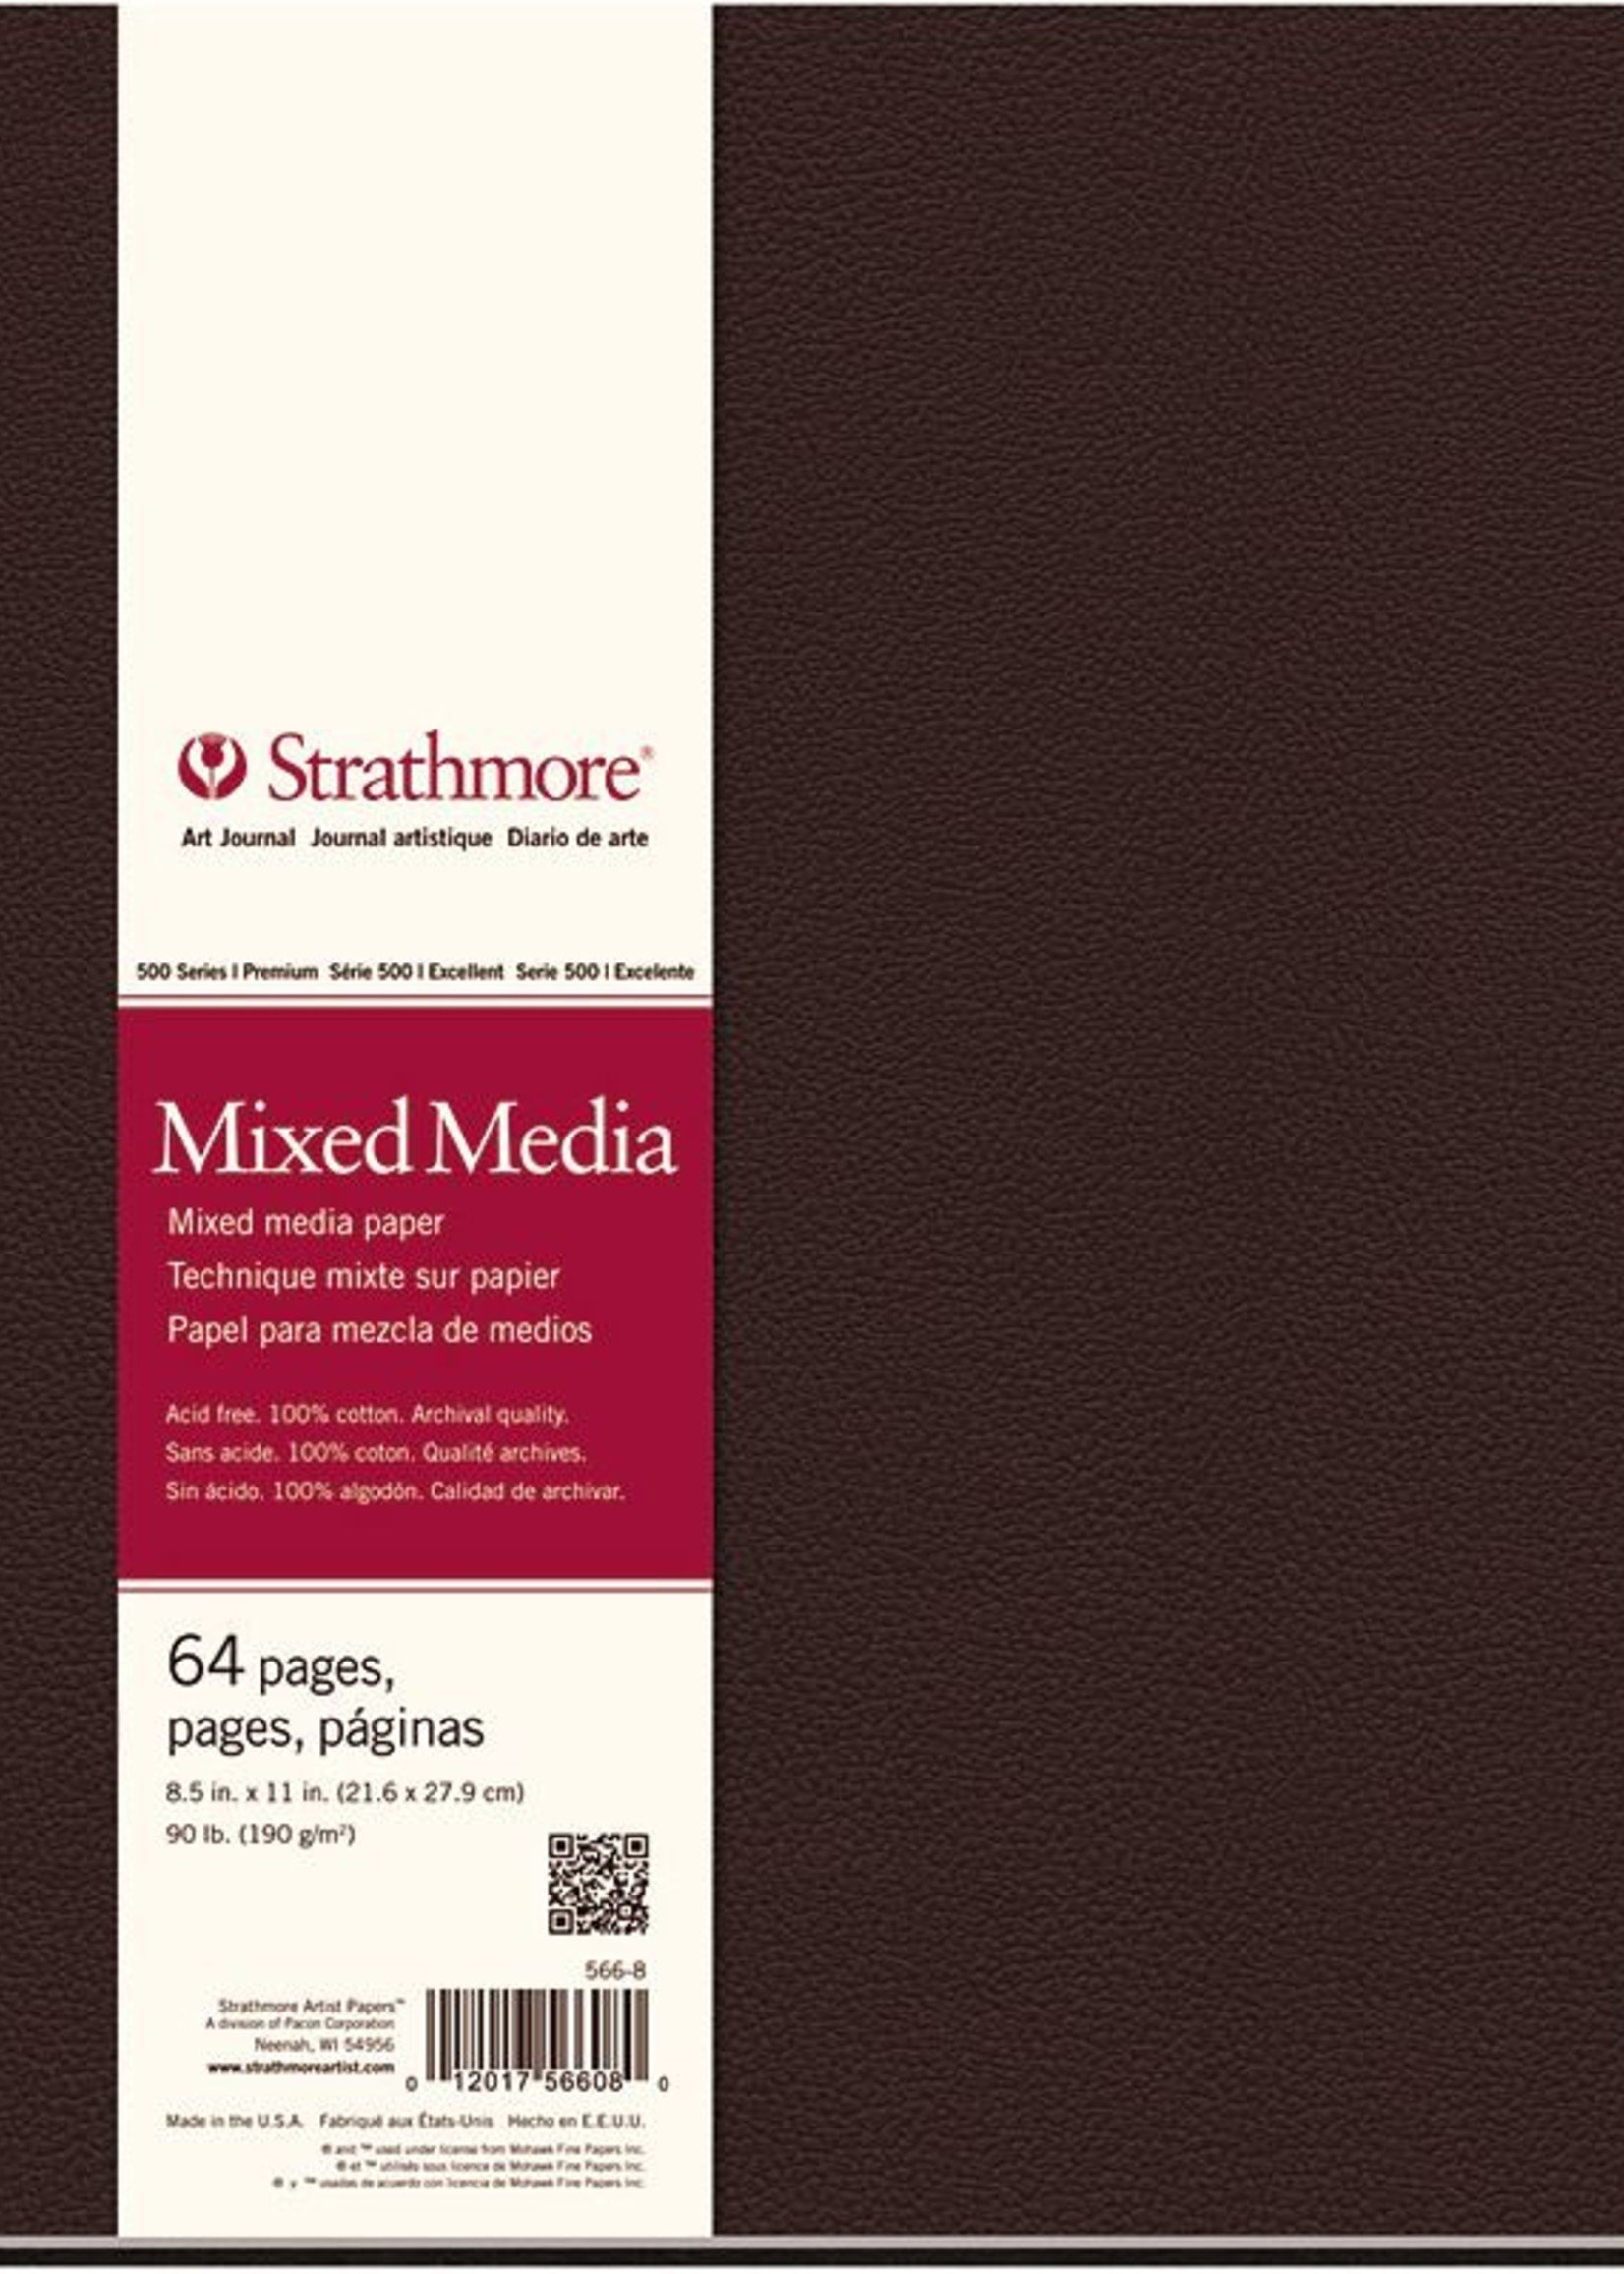 STRATHMORE STRATHMORE ART JOURNAL MIXED MEDIA HARDBOUND 8.5X11  90LB    STR-566-8